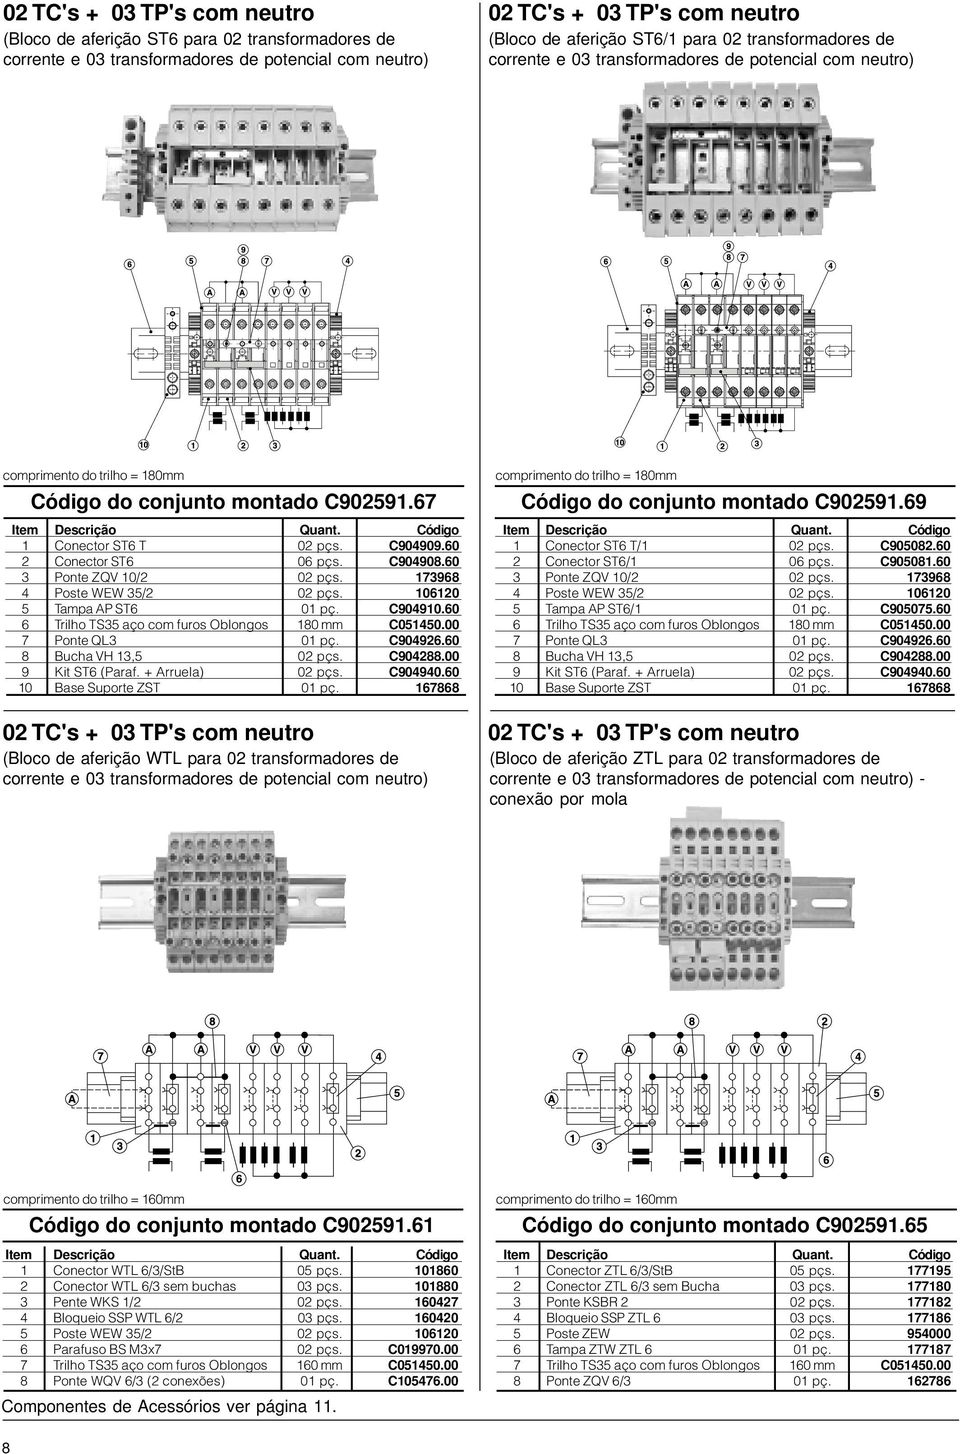 00 02 TC's + 03 TP's com neutro (Bloco de aferição WTL para 02 transformadores de comprimento do trilho = 180mm do conjunto montado C902591.69 1 Conector ST6 T/1 02 pçs. C905082.